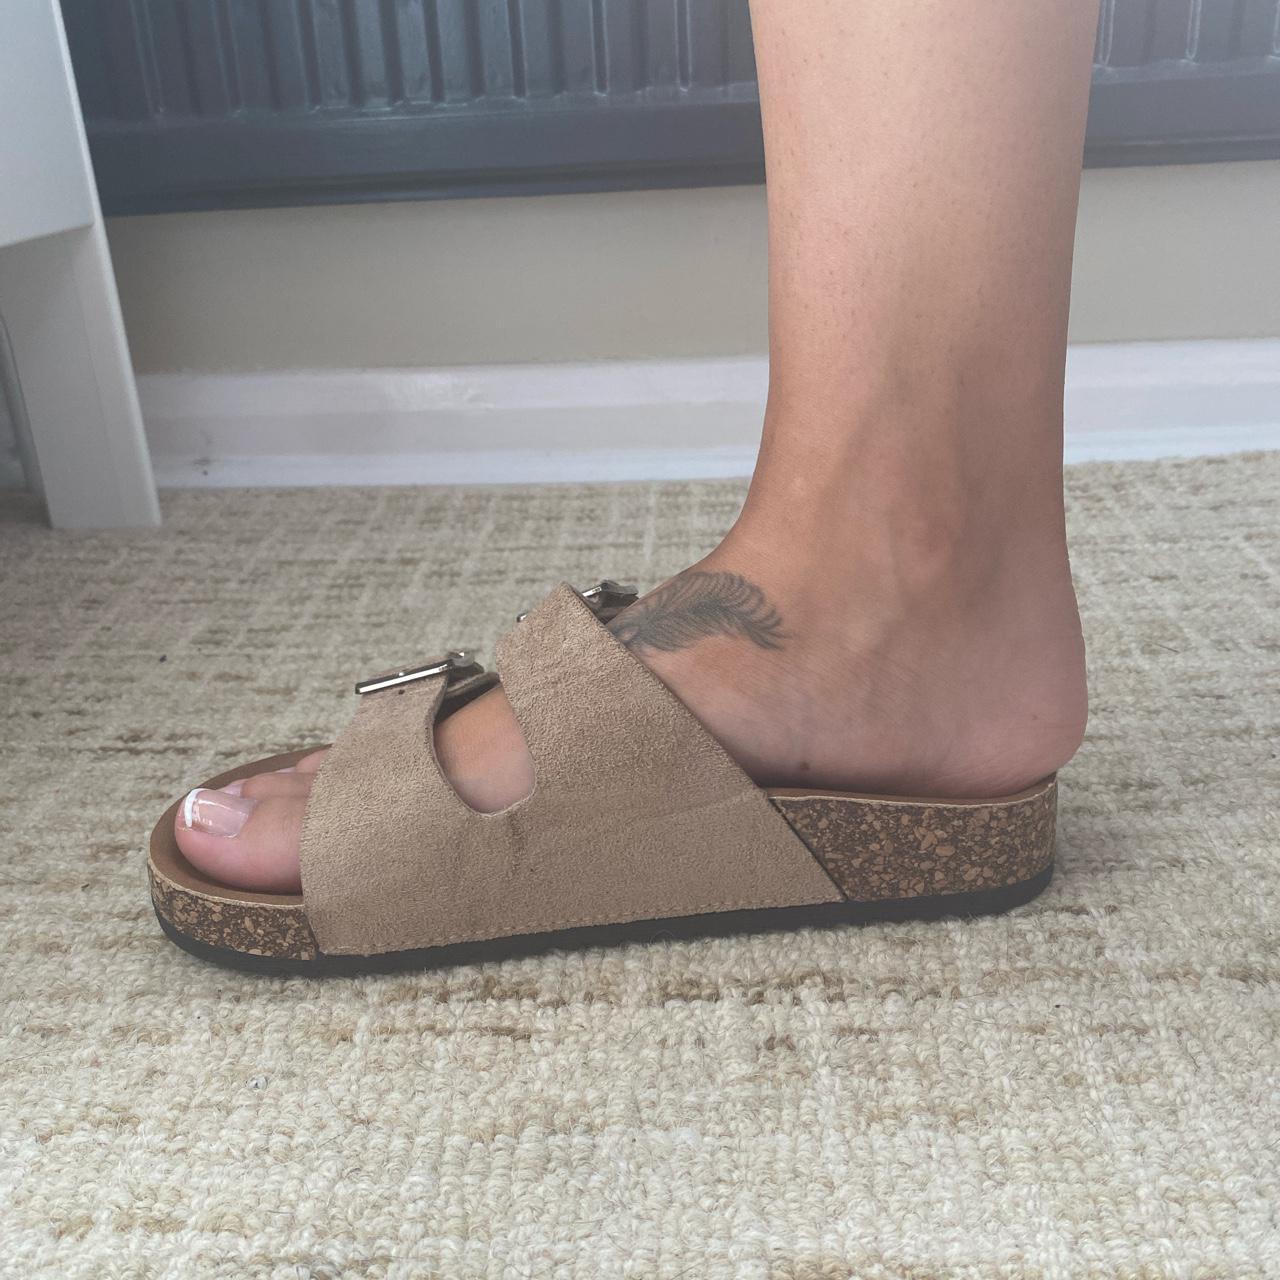 Product Image 2 - Gorgeous Birkenstock Arizona style sandals.